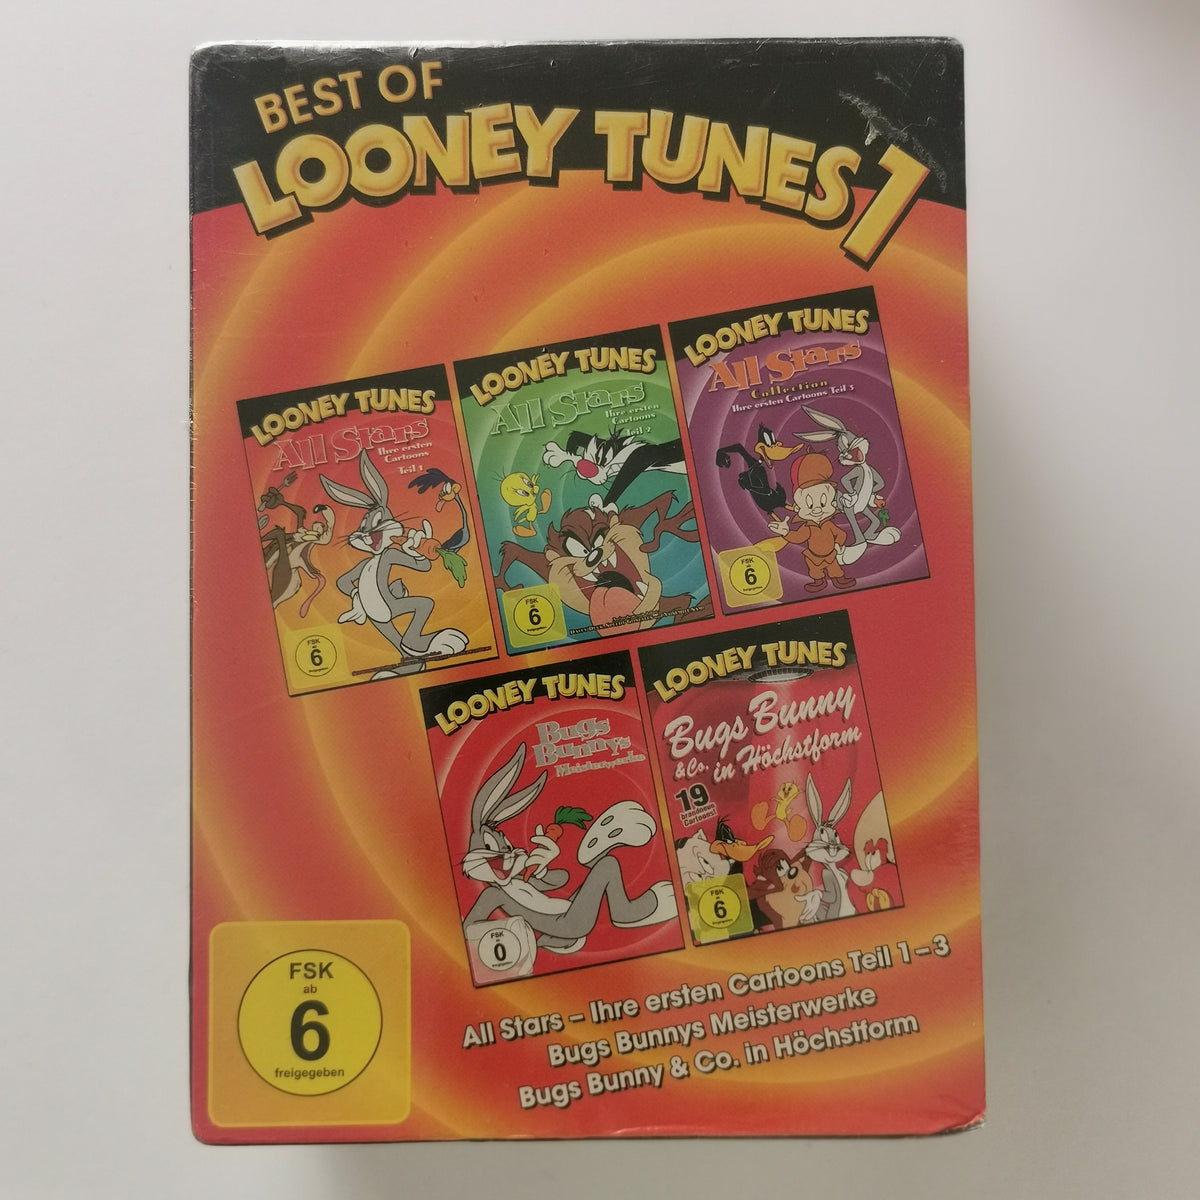 Best of Looney Tunes 1 [5DVDs]